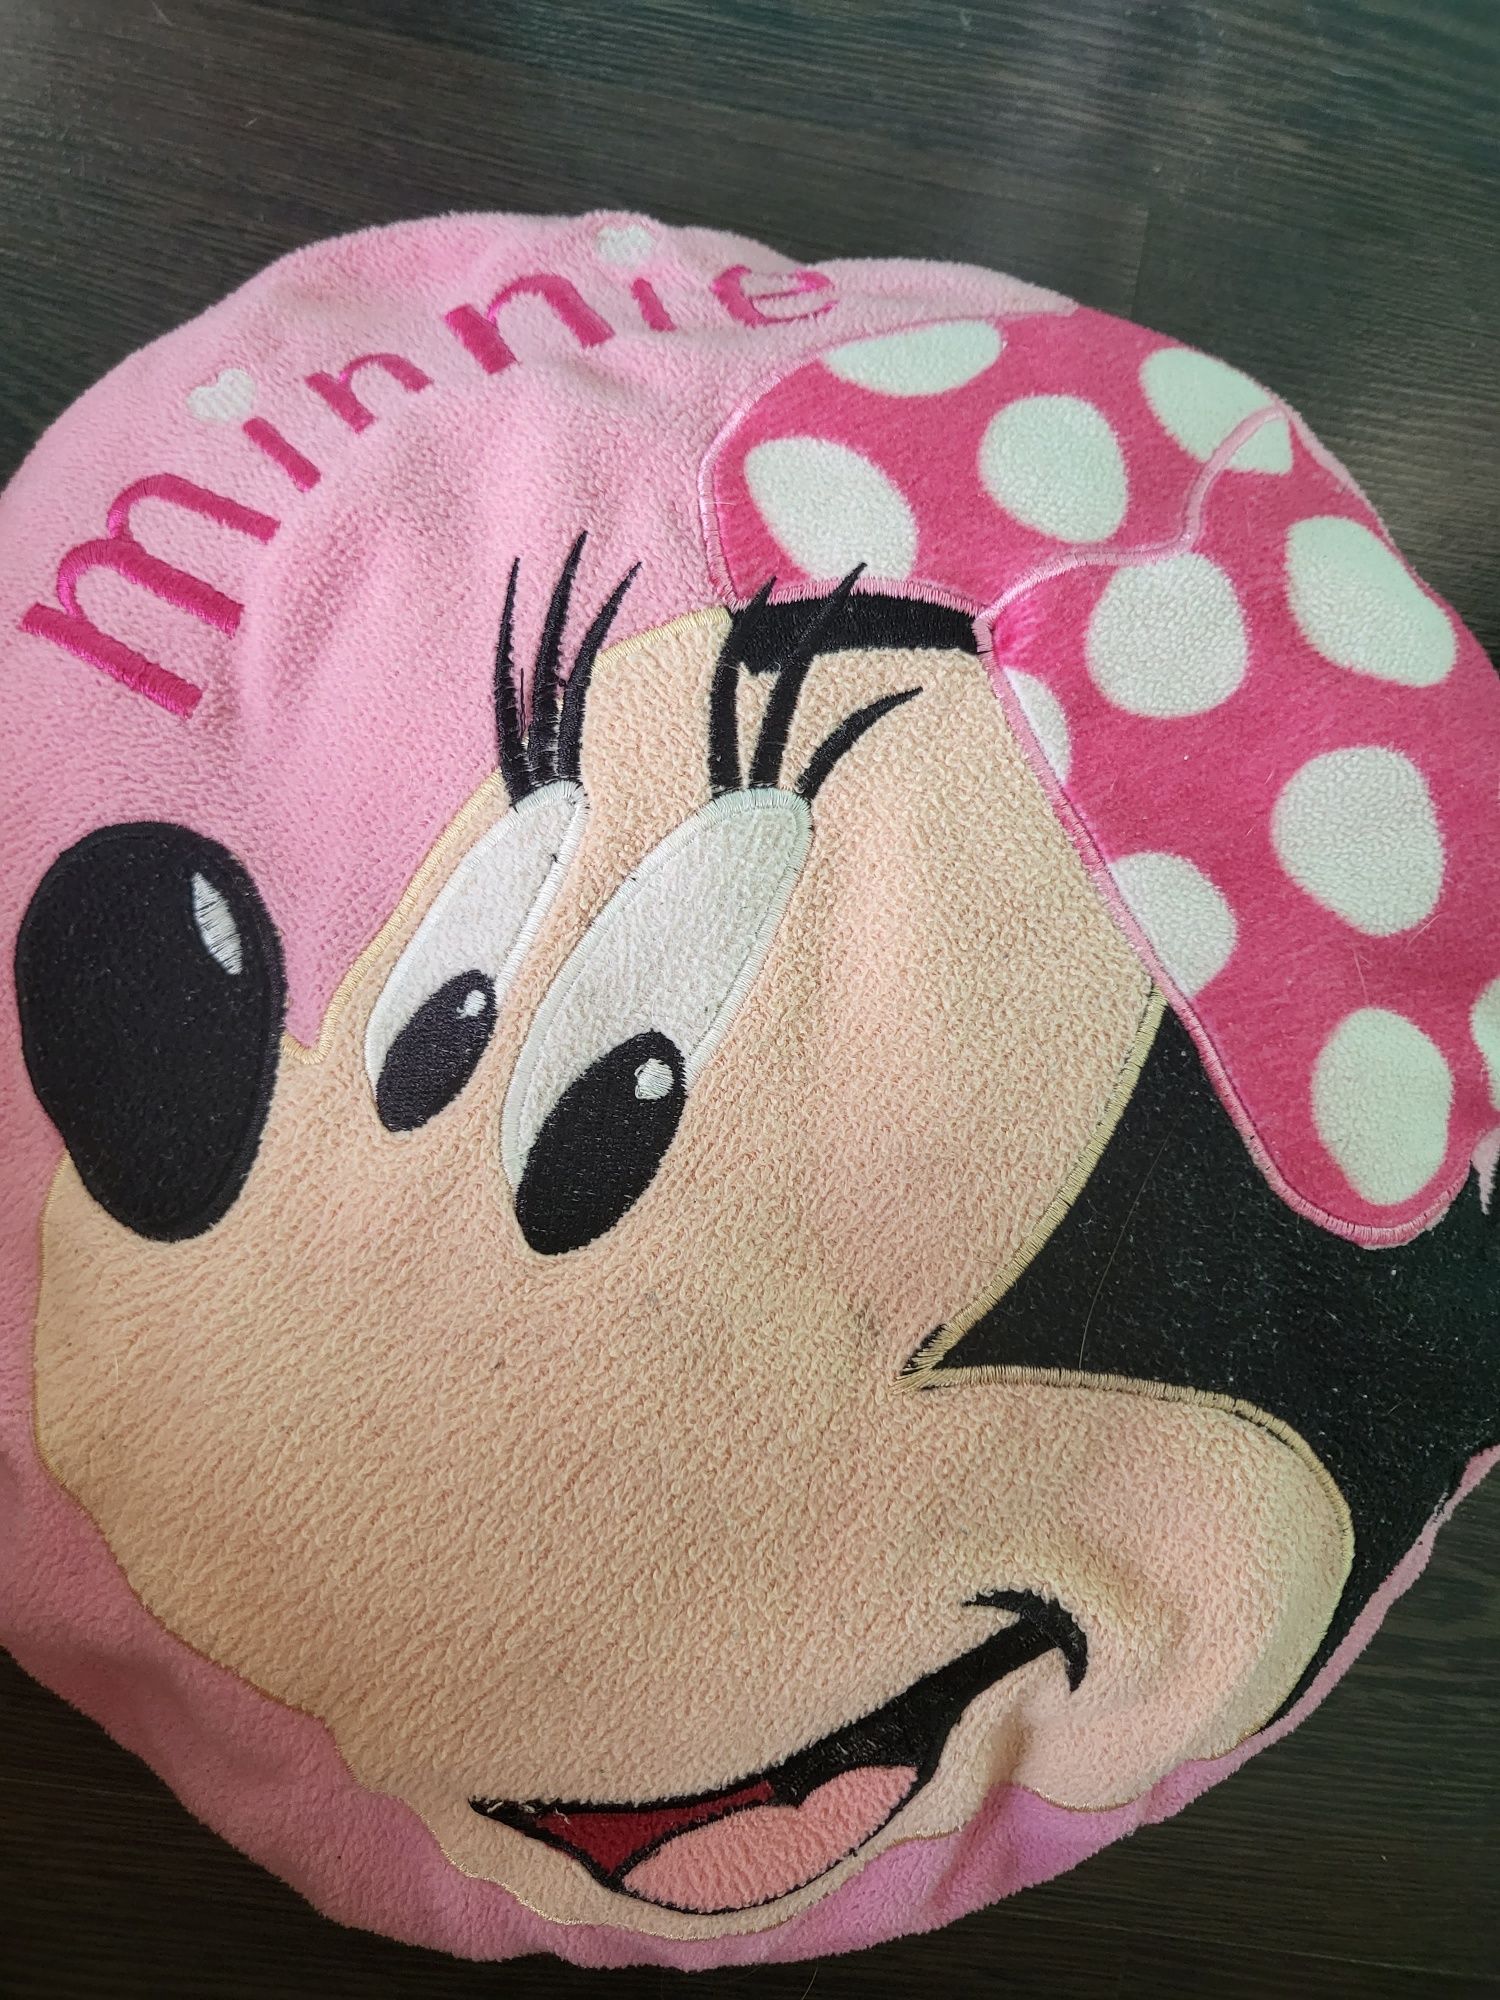 Poduszka okrągła Minnie Mouse / Disney